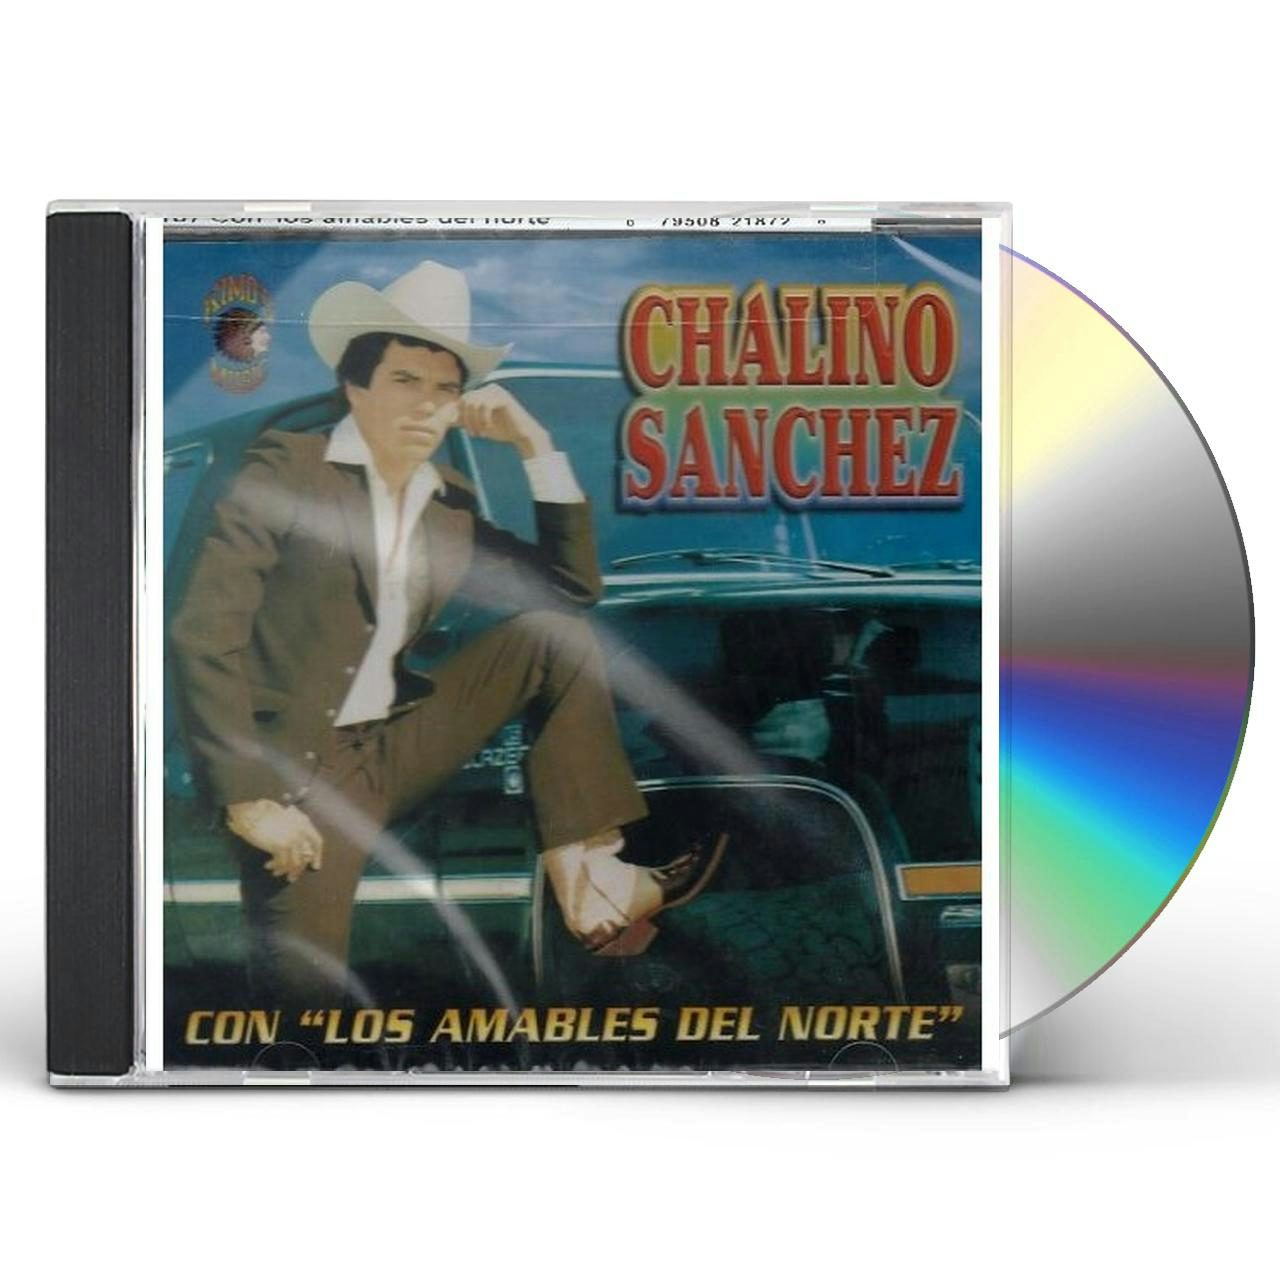 Chalino Sanchez Y sus Amigos Cd Htf Rare  eBay